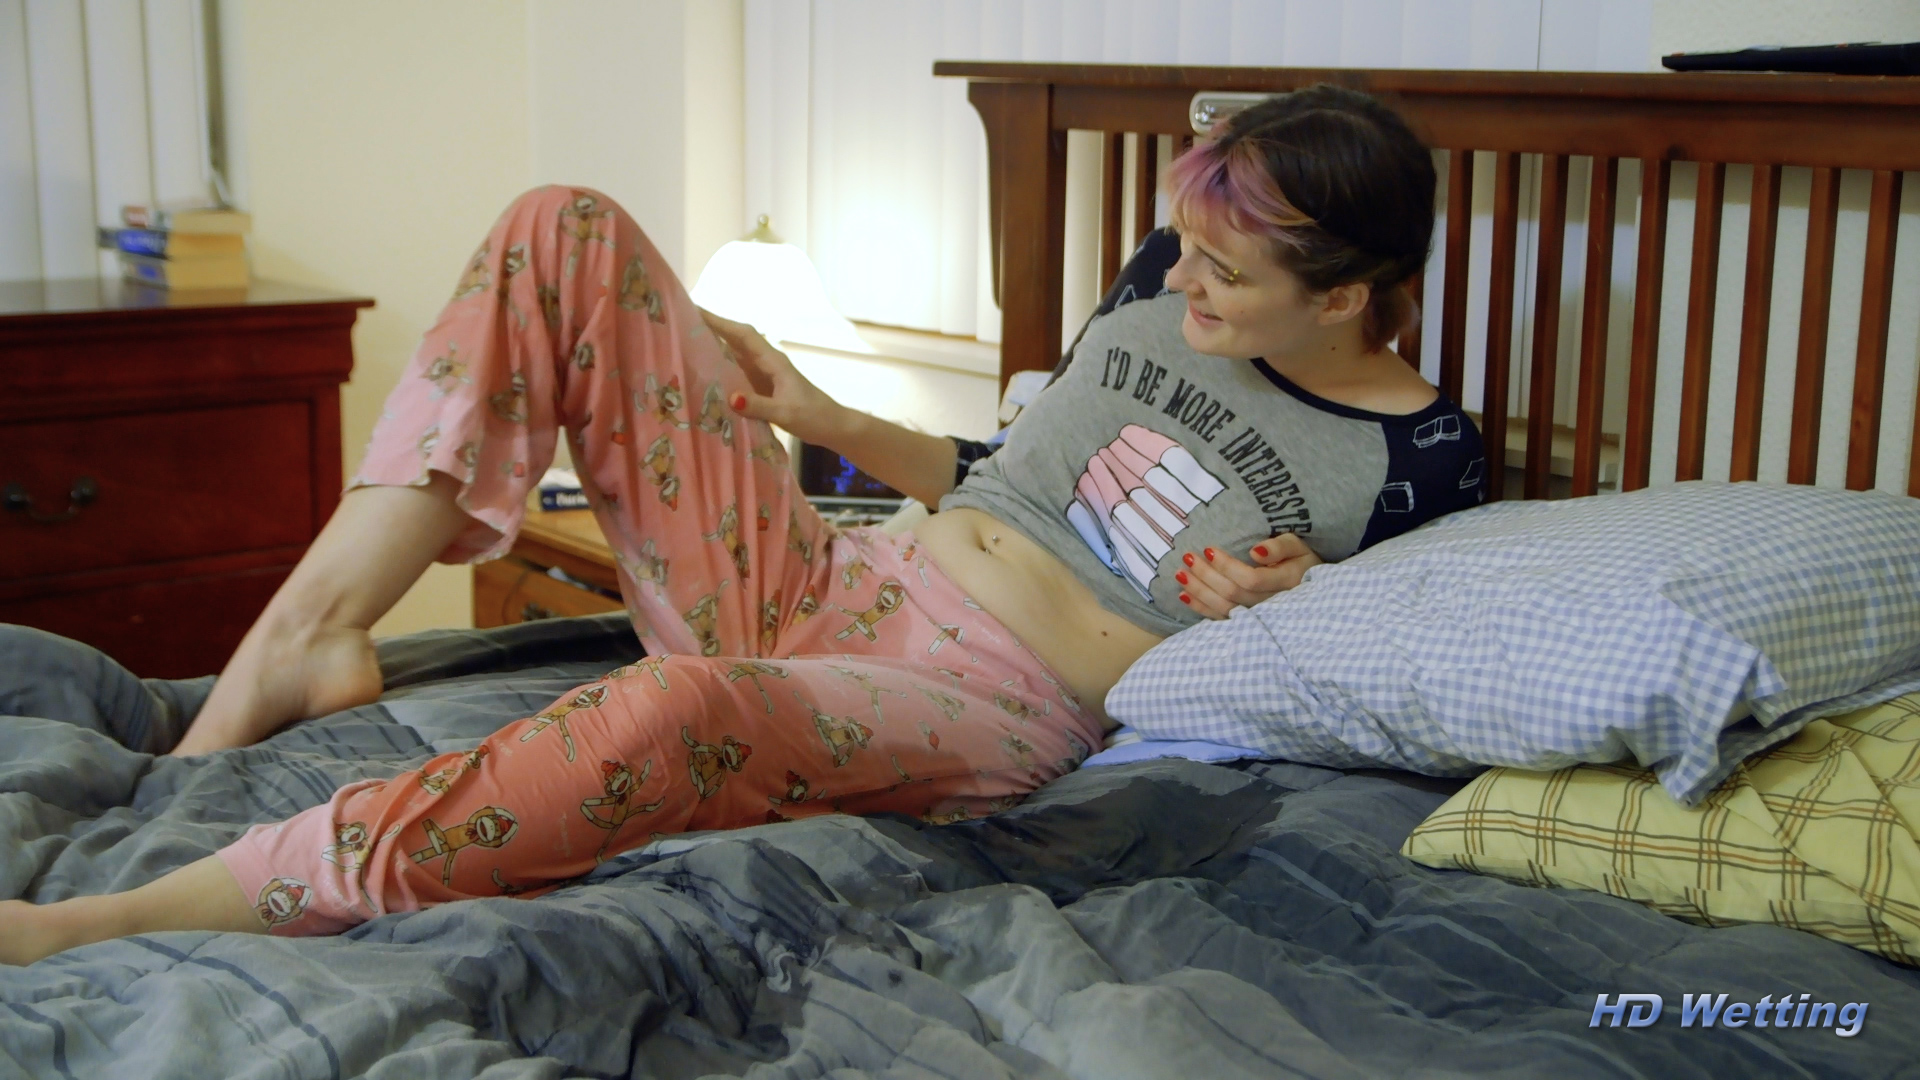 Footie pajamas tumblr